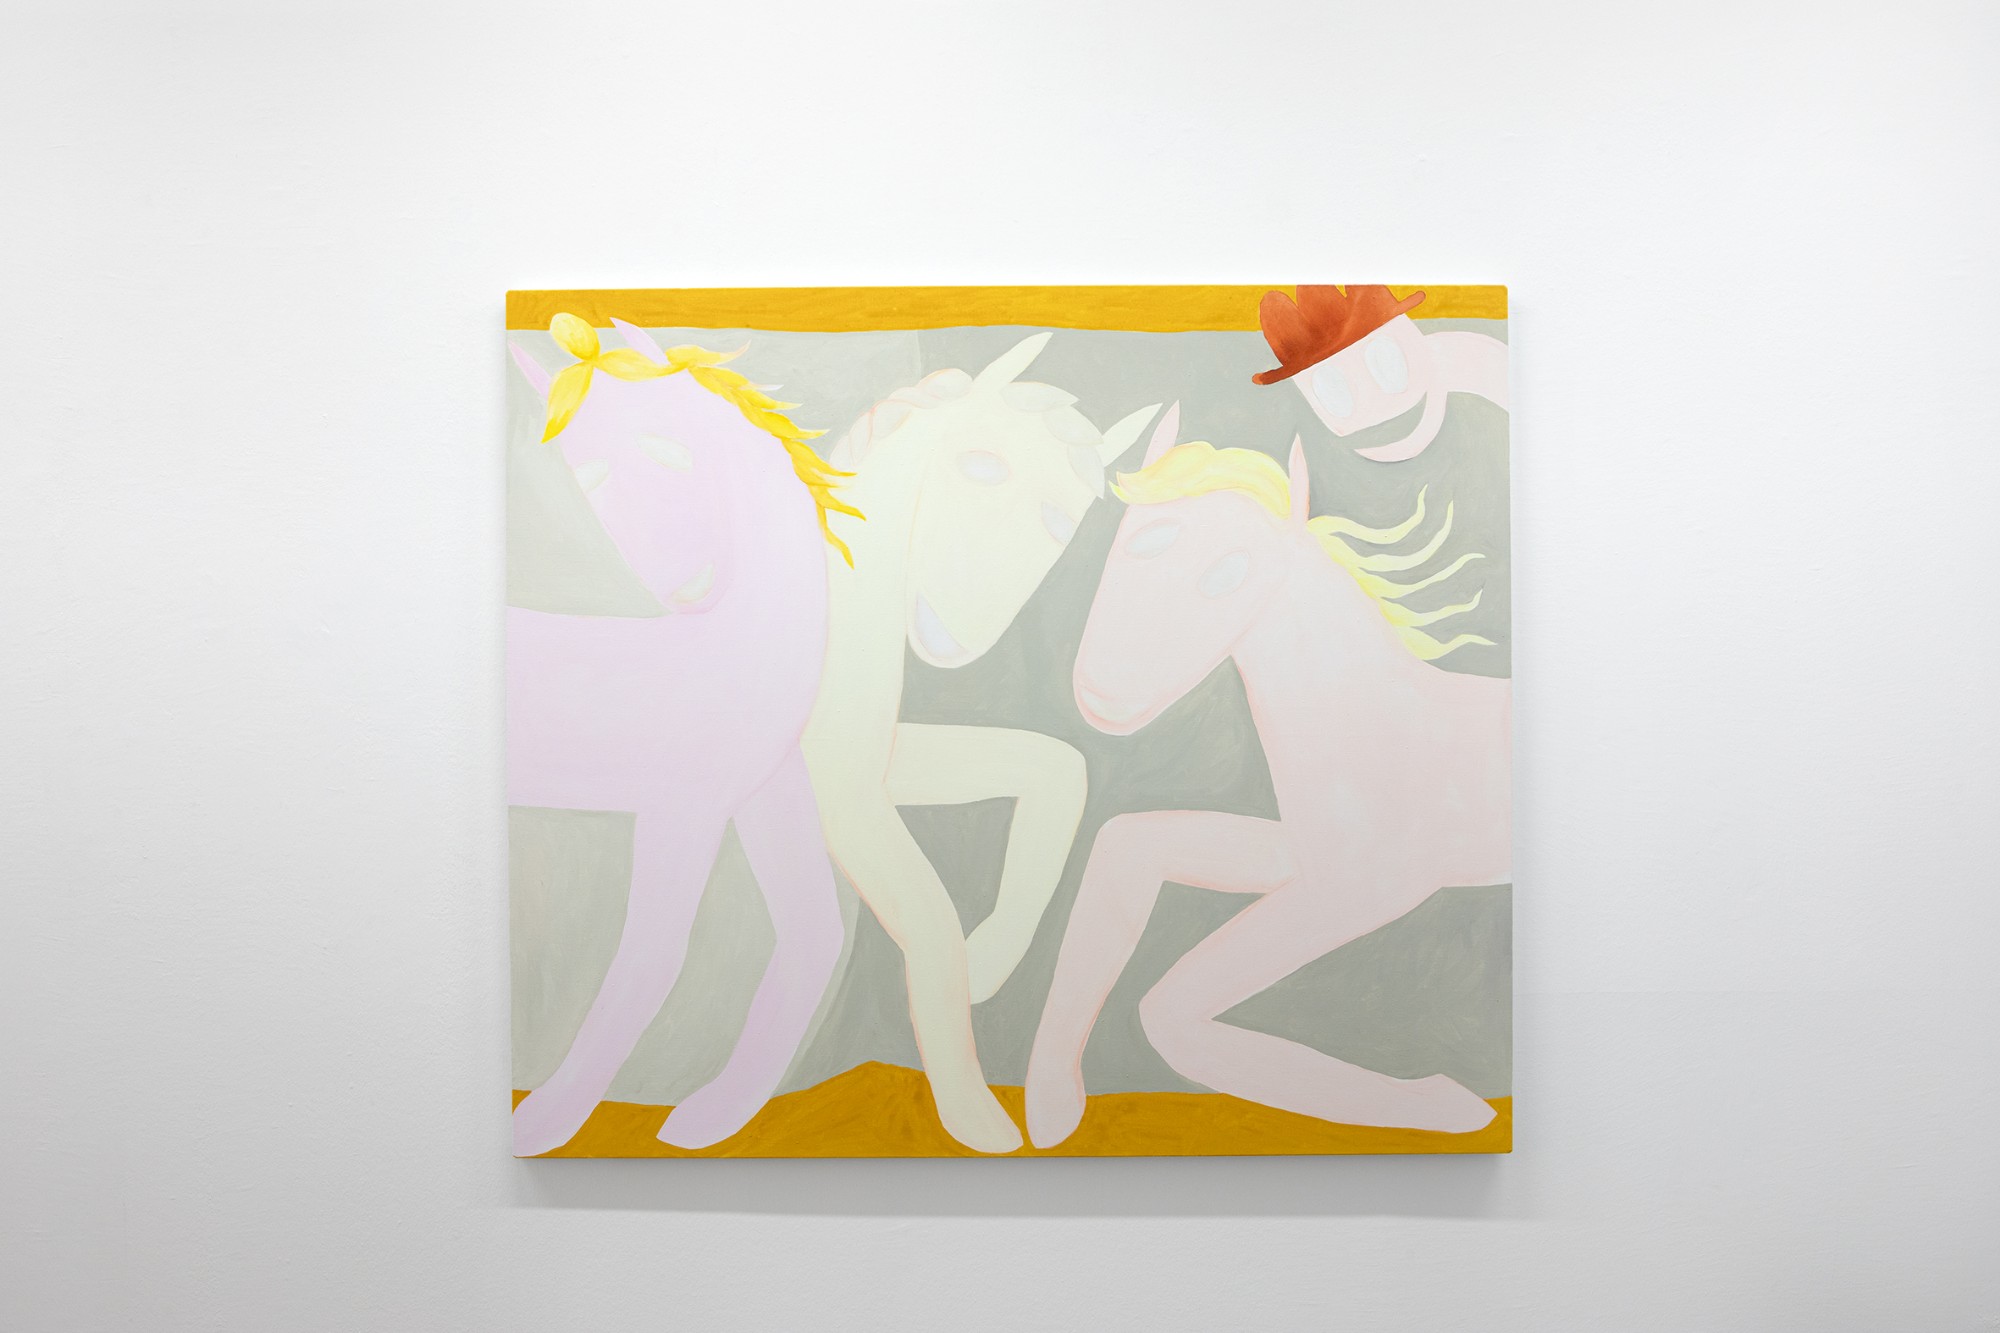 Sarah Bogner, Vier blasse Freunde, 2022, egg tempera, ink on canvas, 130 x 150 cm